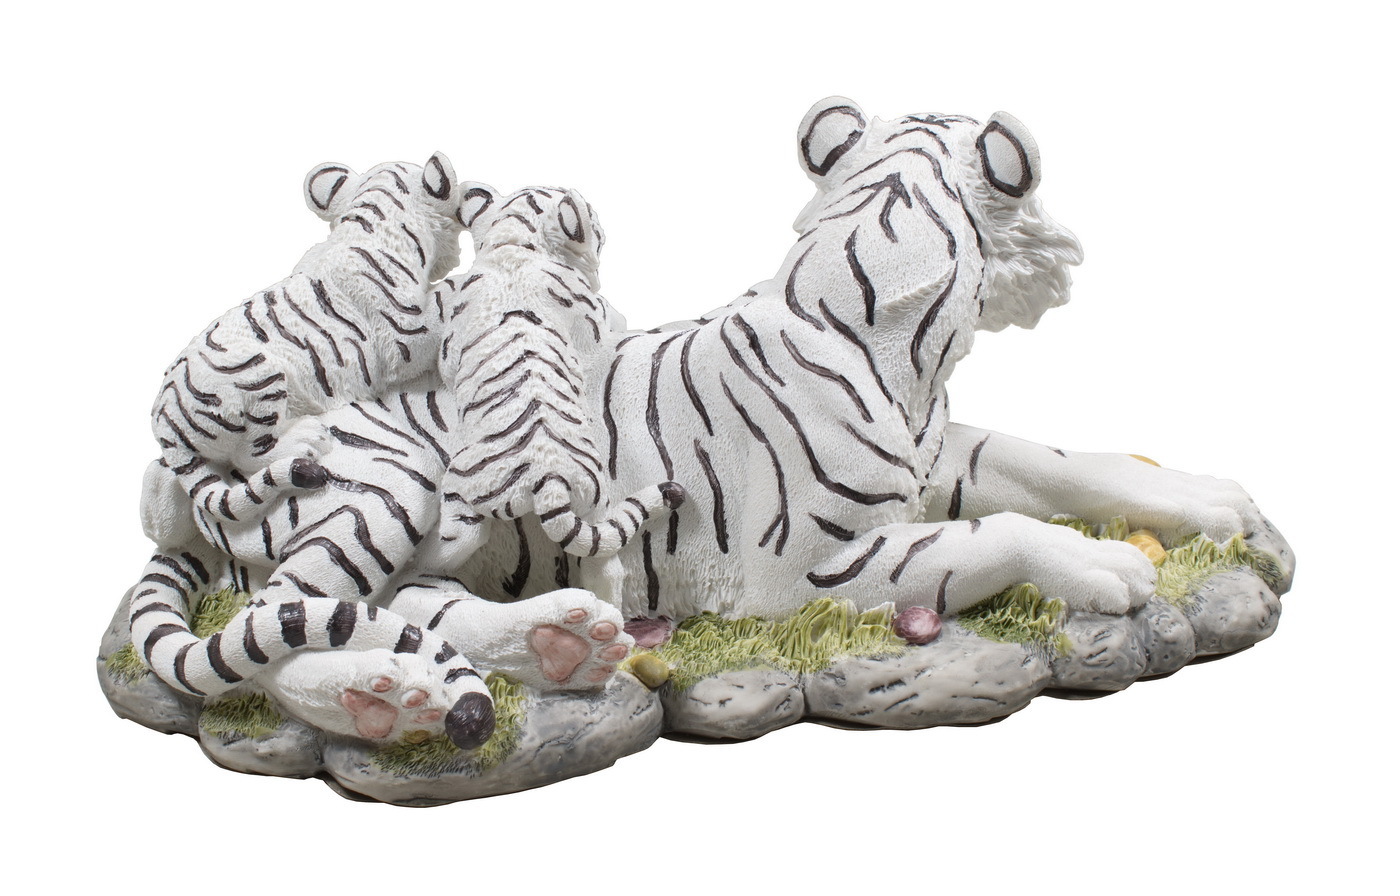 Baby sitzend Tigerbaby Tigerjunges Raubtier Deko Weiße Tiger Figur 